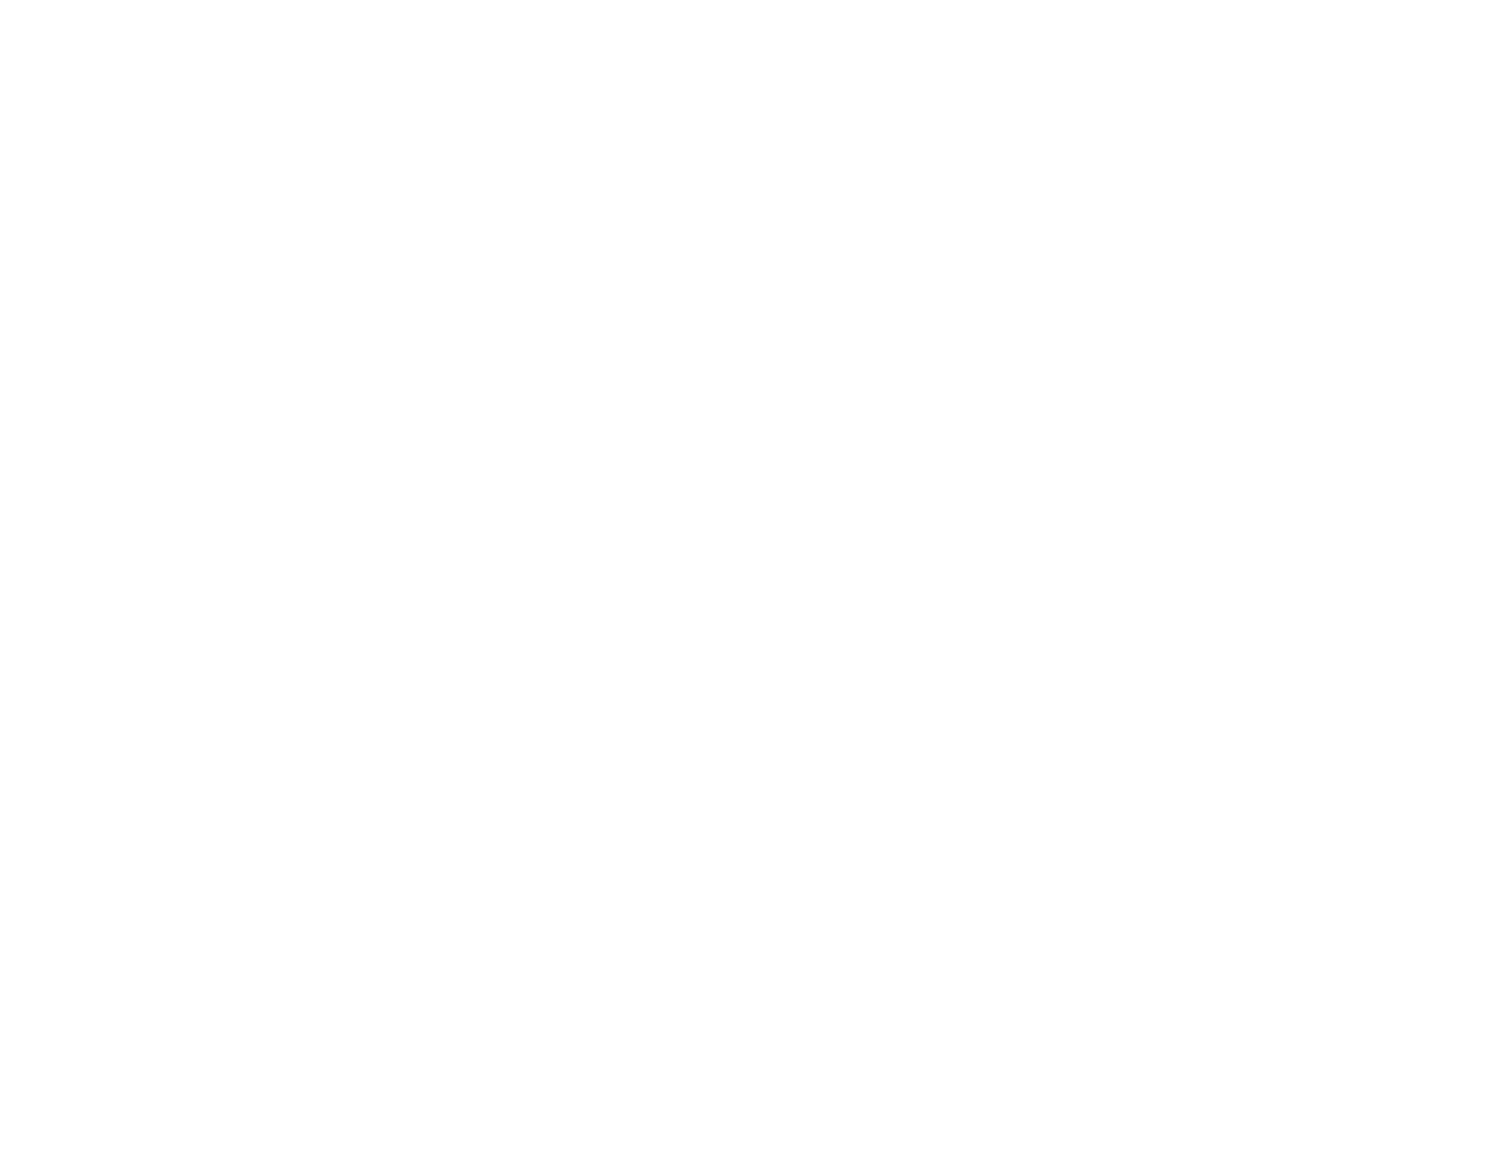 COYA Productions